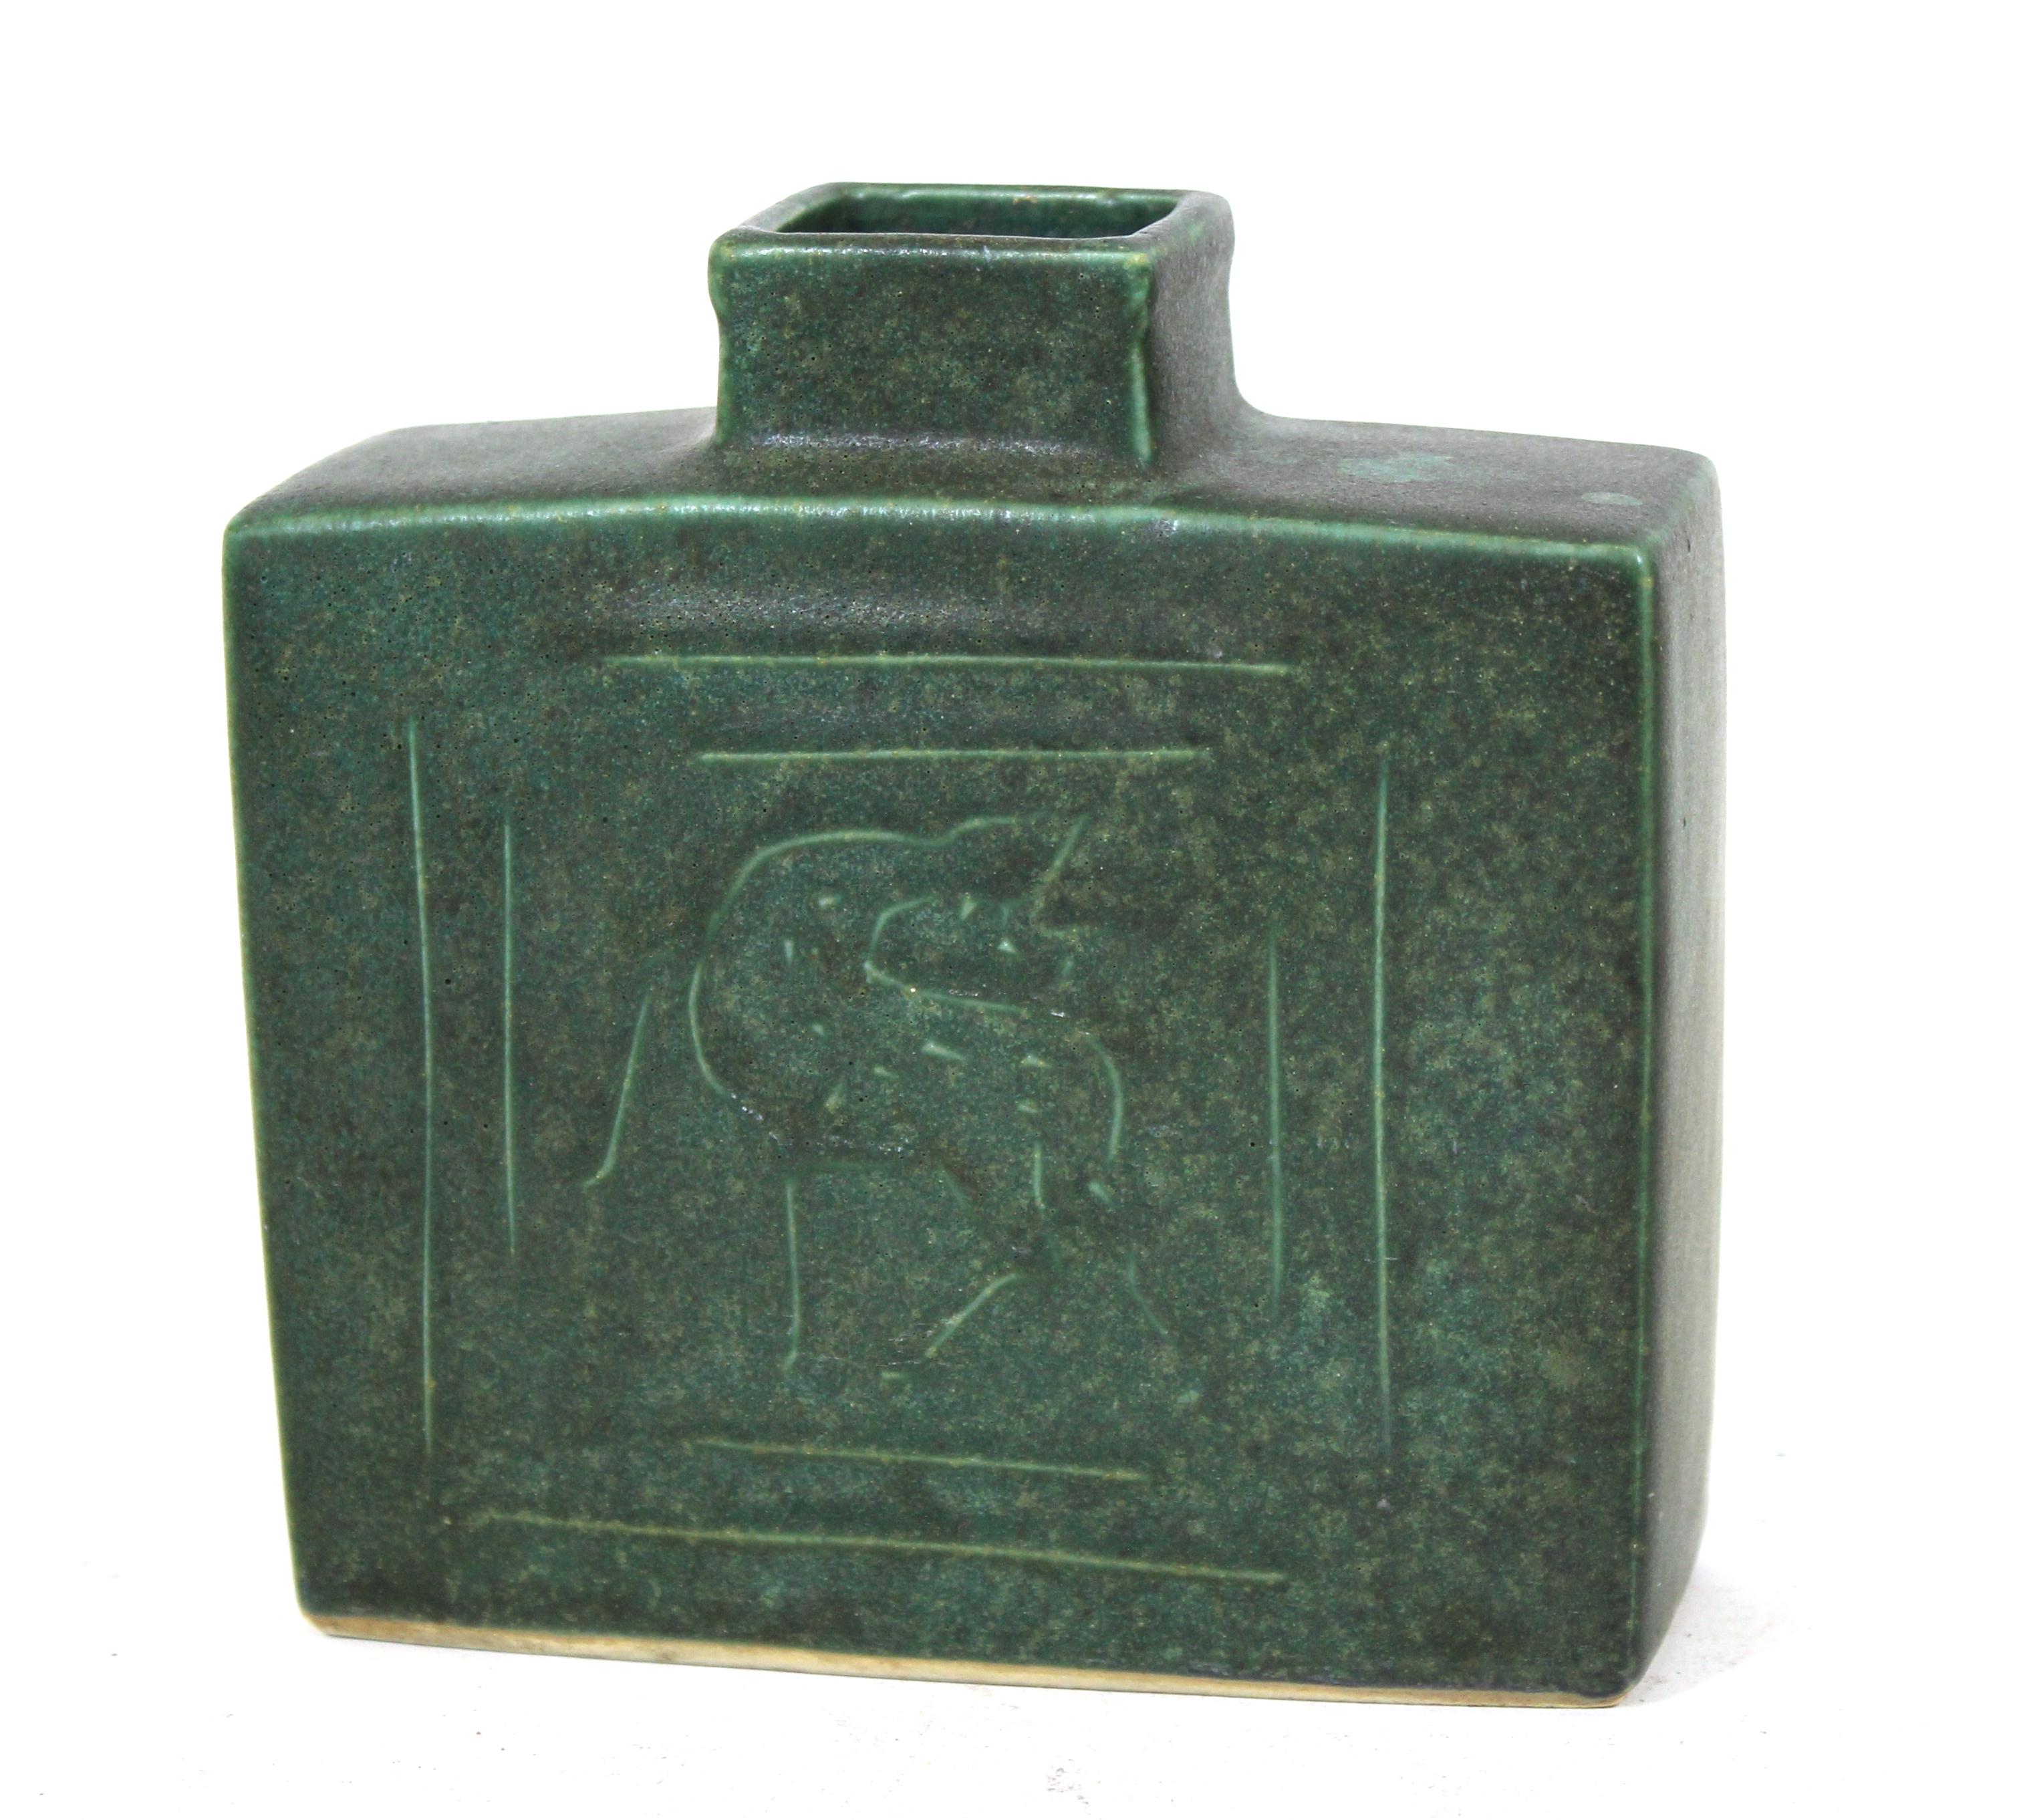 Mid-Century Modern rechteckige Form Keramik Vase in grün mit stilisierten Hirschen auf der Vorder-und Rückseite. Unleserlich signiert am Boden.